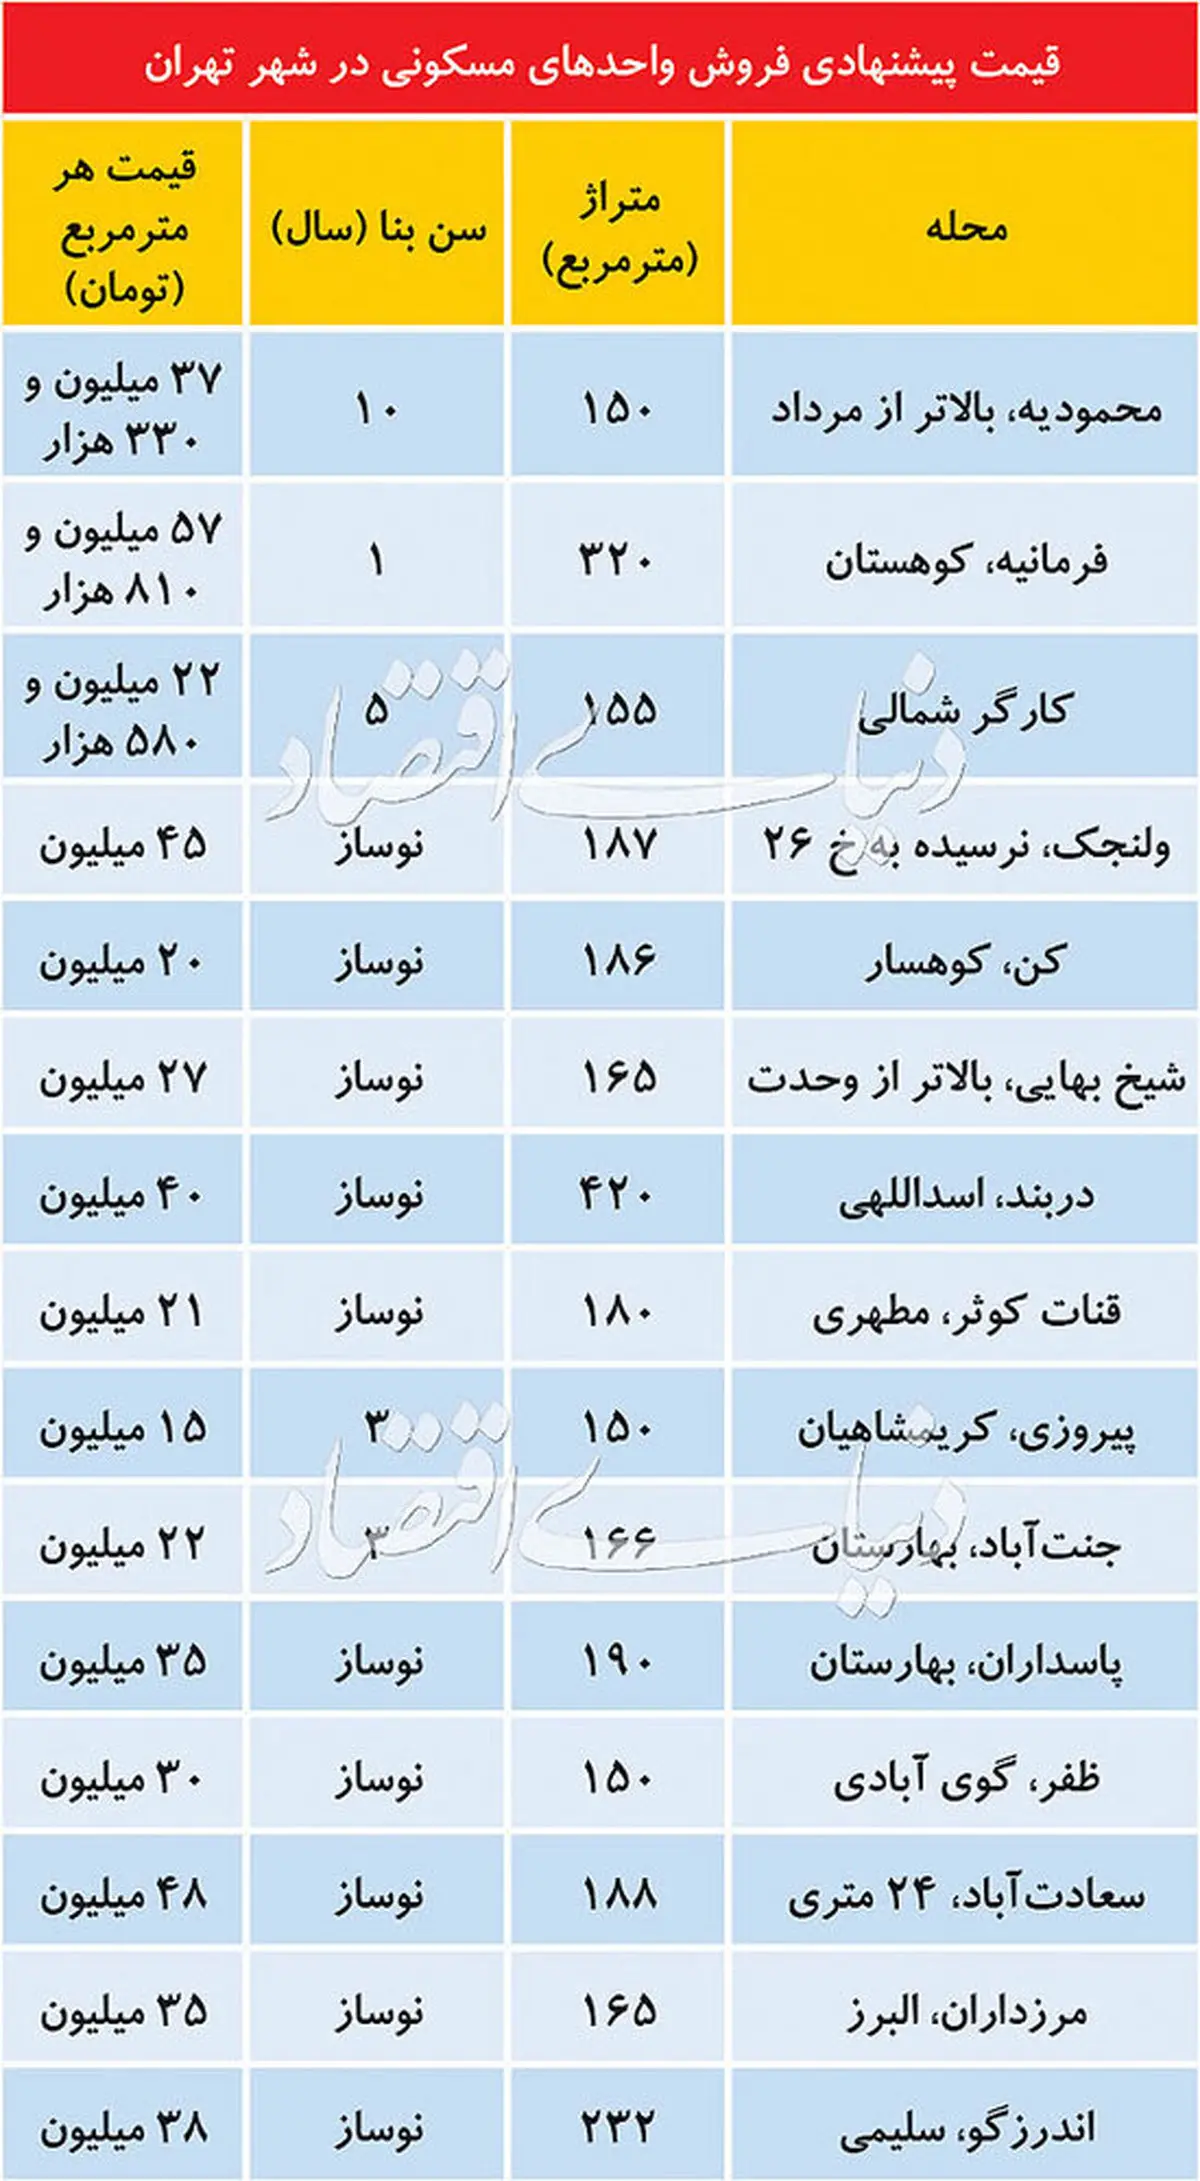 قیمت آپارتمانهای لوکس در تهران/ جدول